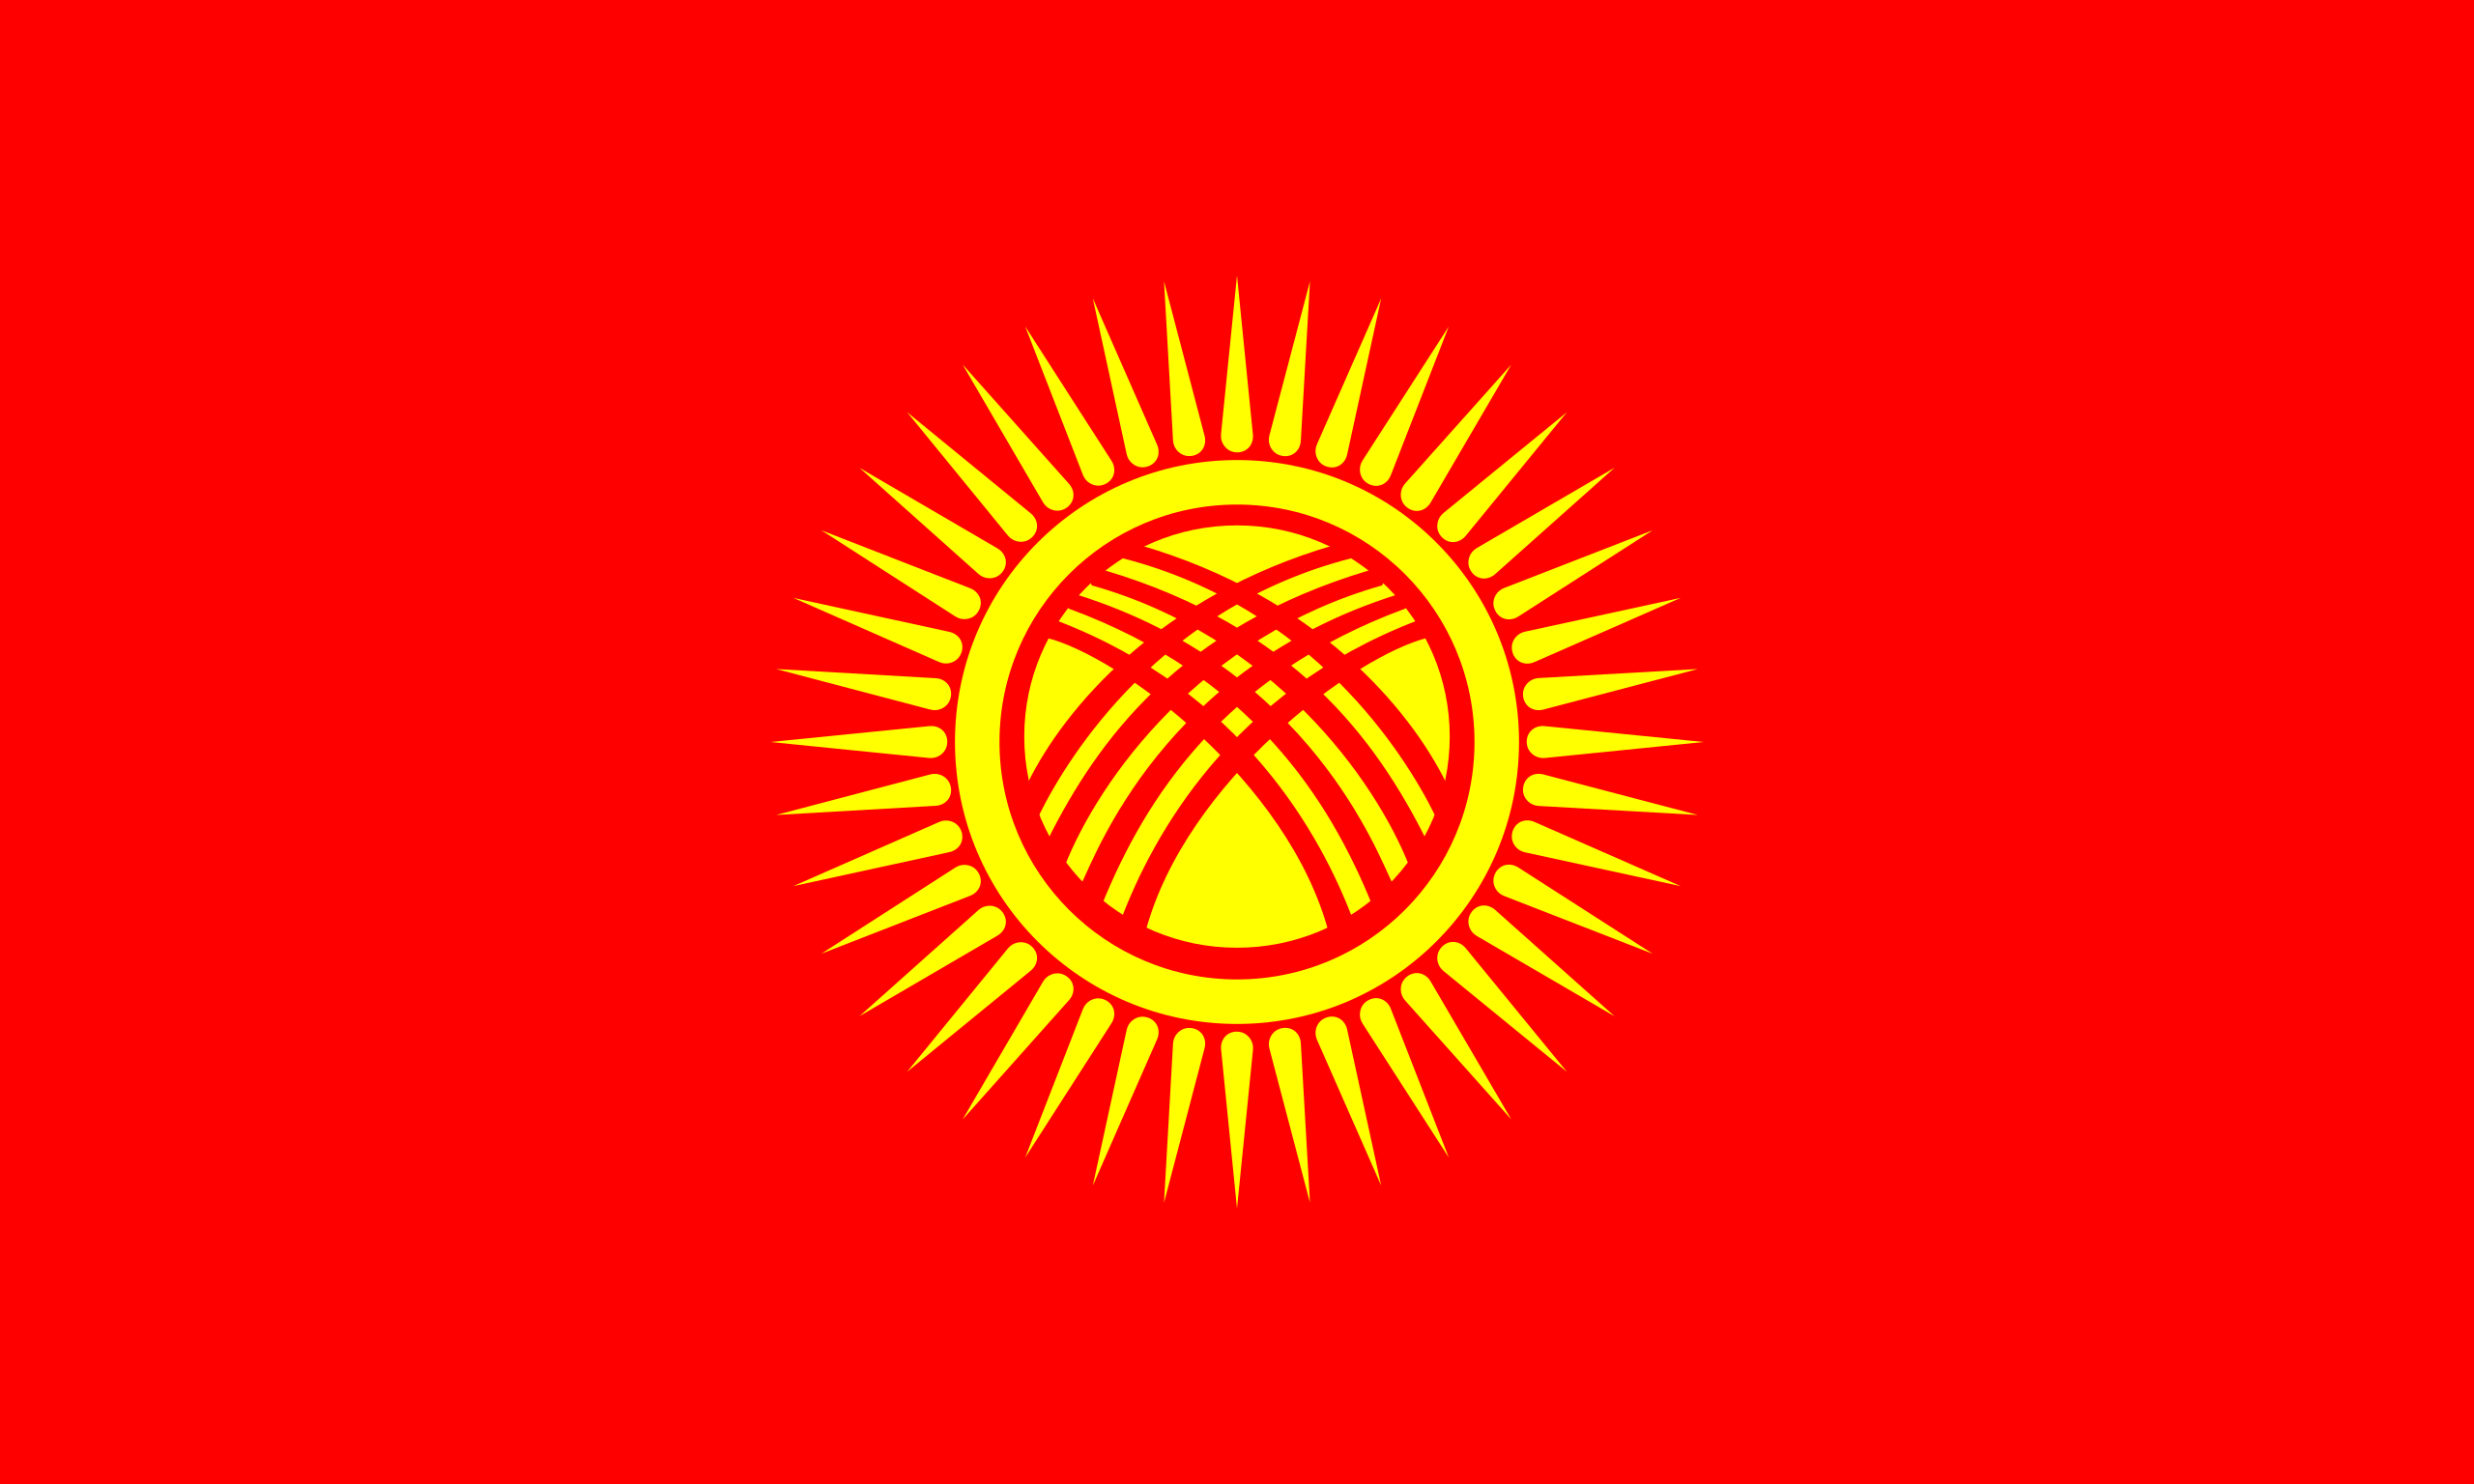 Kyrgyzstan 